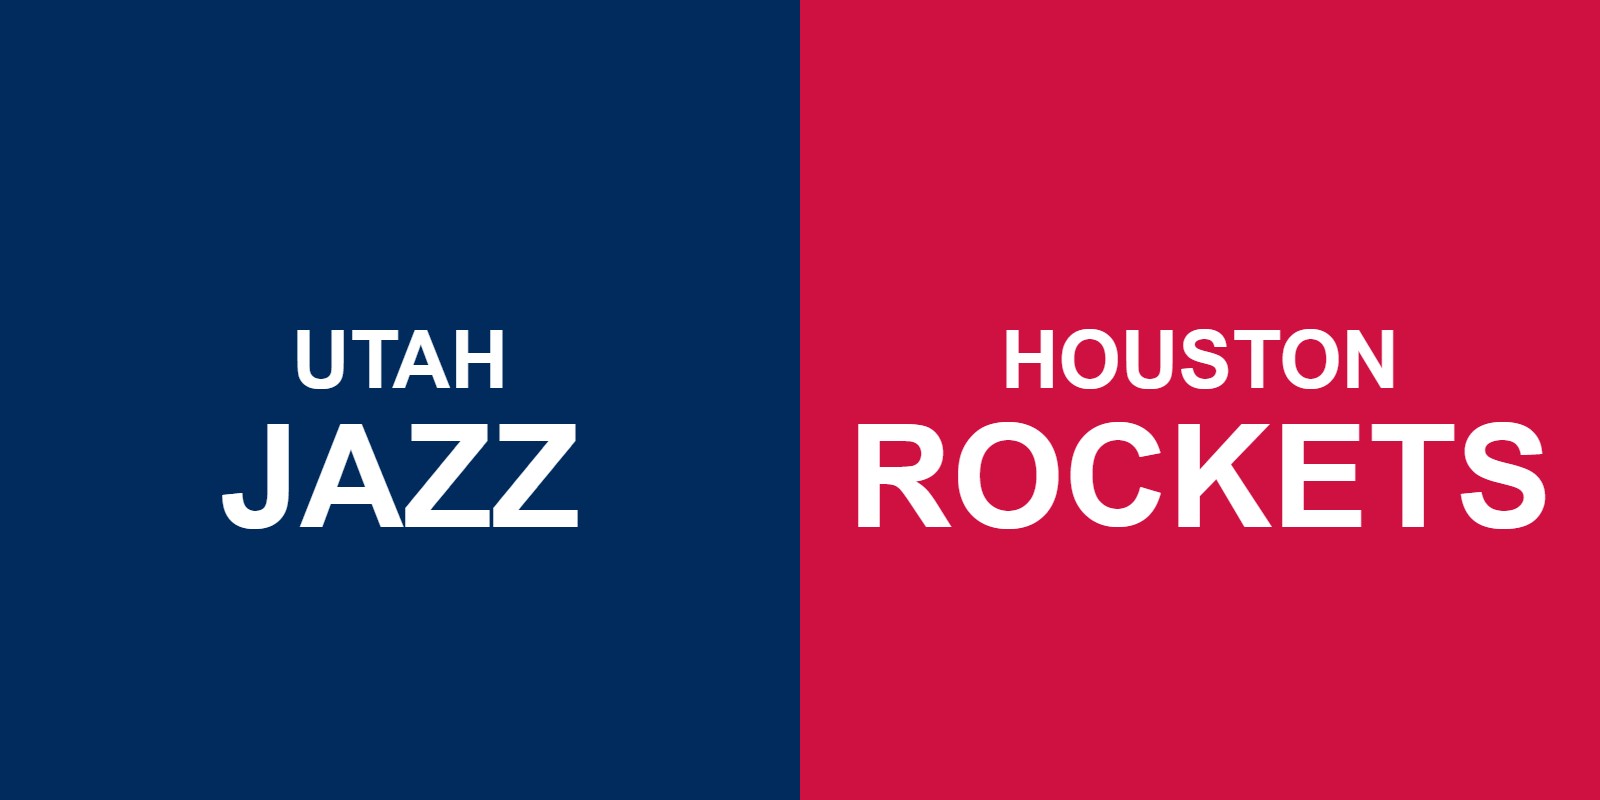 Jazz vs Rockets